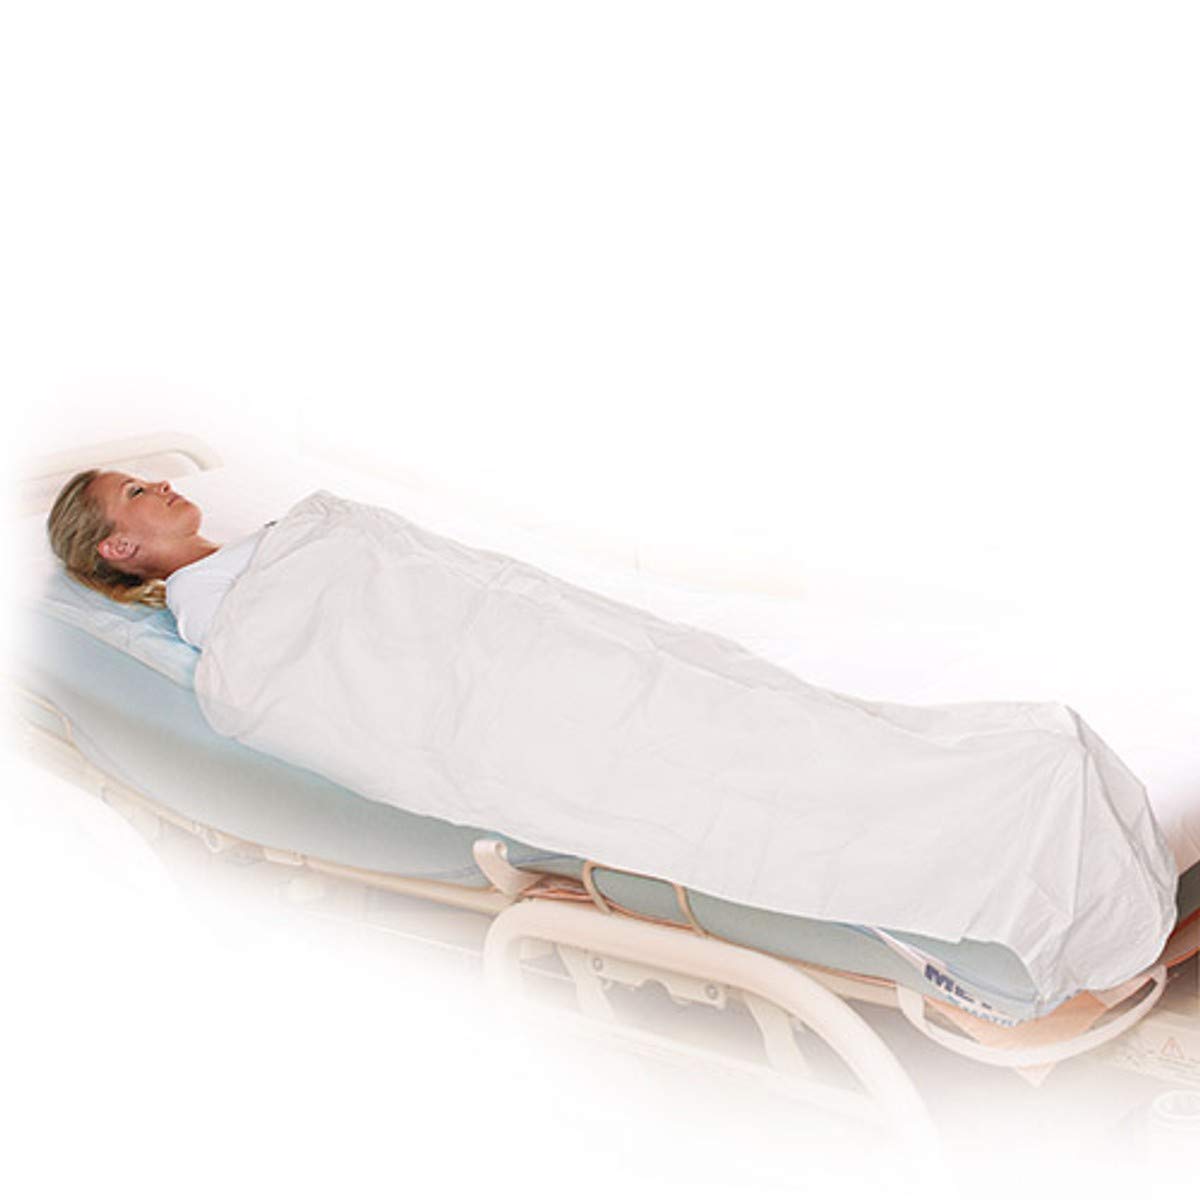 Einweg-PP-Vliesdecke, Premium-Patientendecke, Einmal-Patientendecke, Einweg-Decke, 190 x 110 cm, 6/12 Lagen, weiß, Größe:5 x 12 lagig